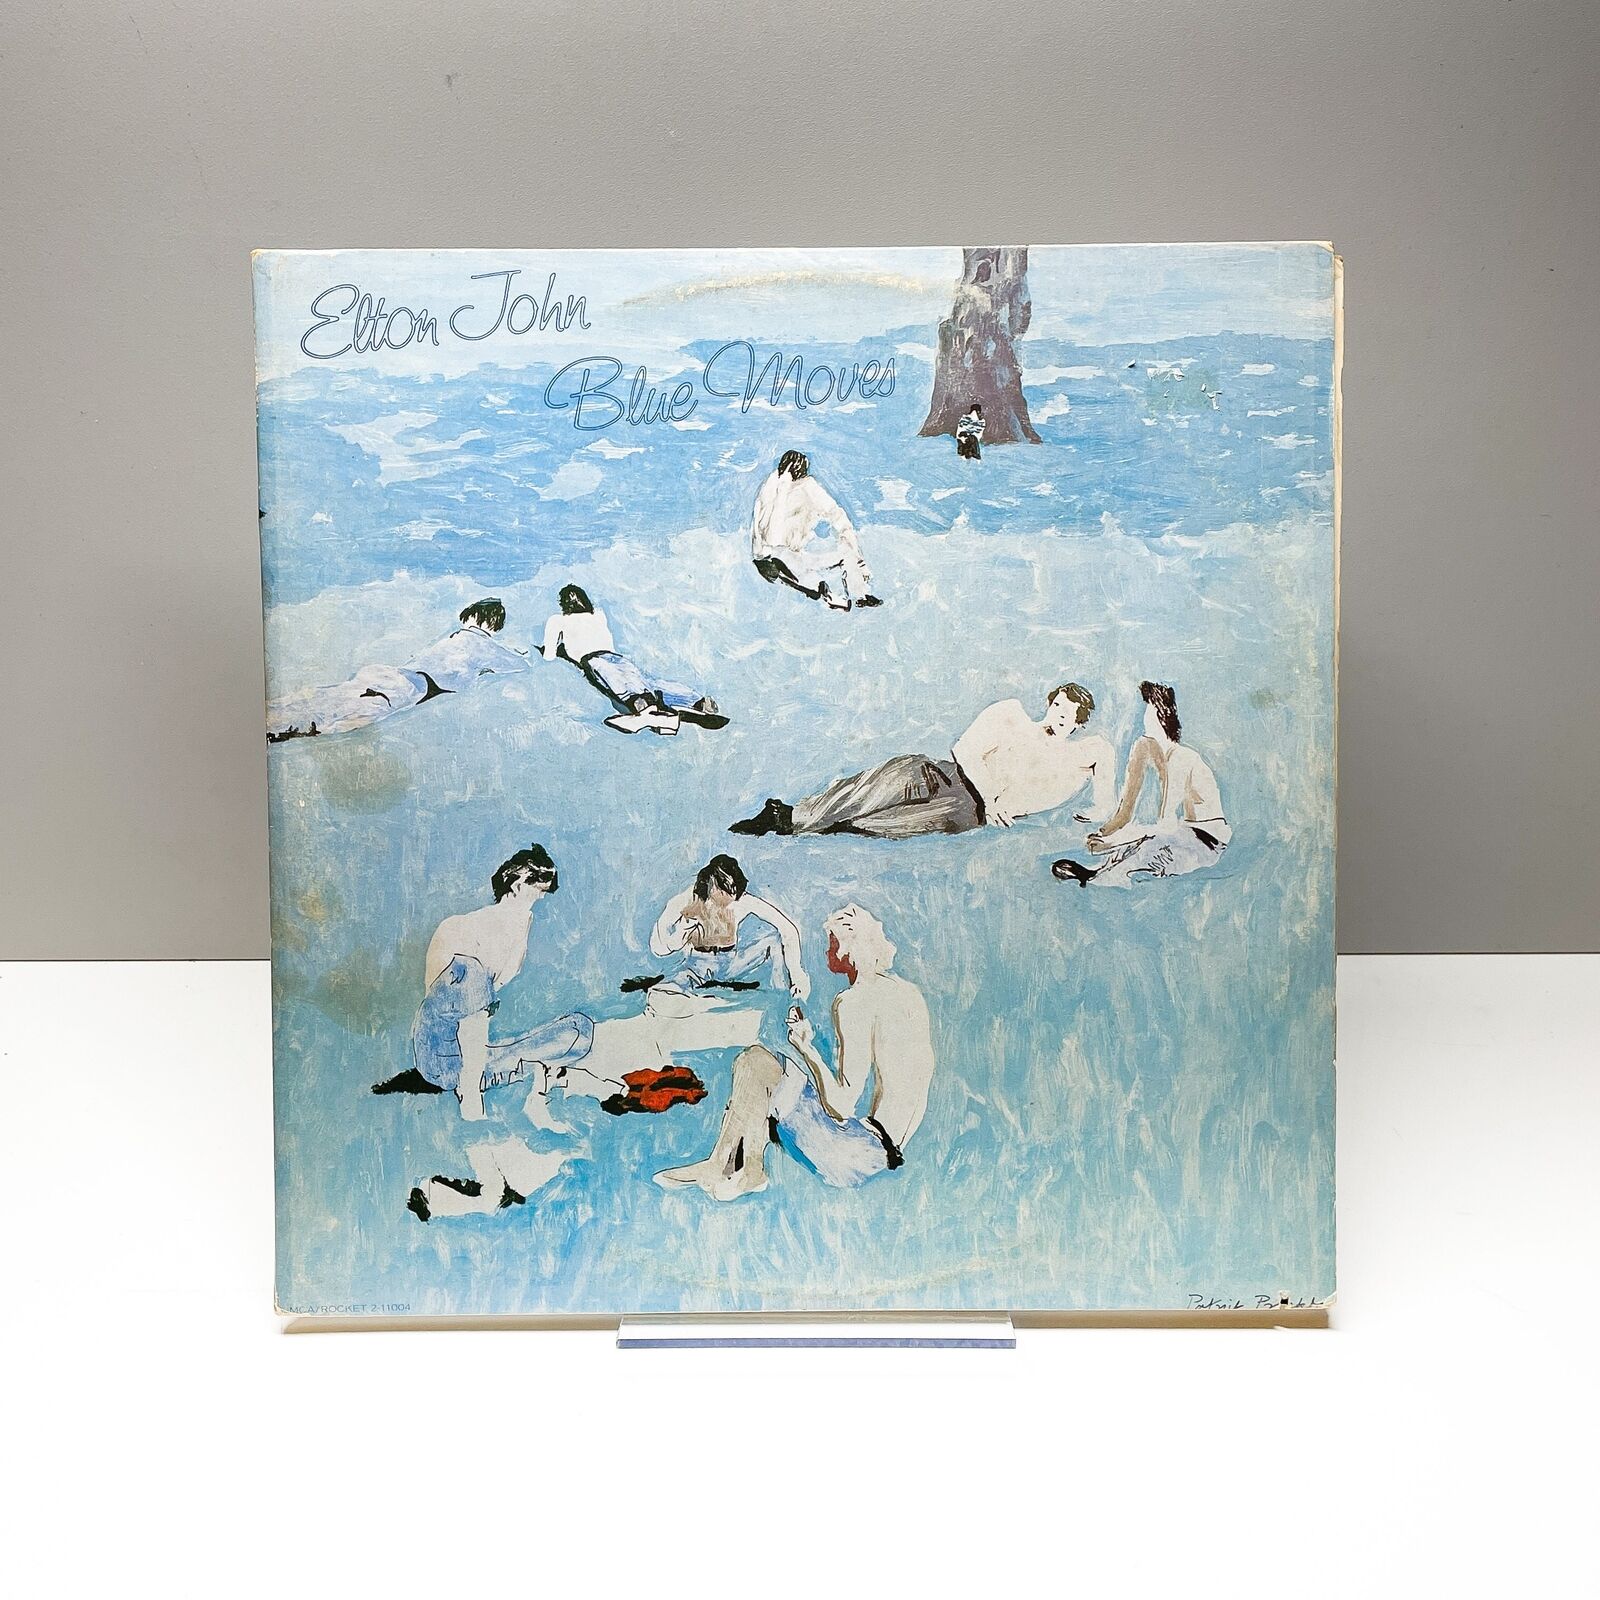 Elton John - Blue Moves - Vinyl LP Record - 1976